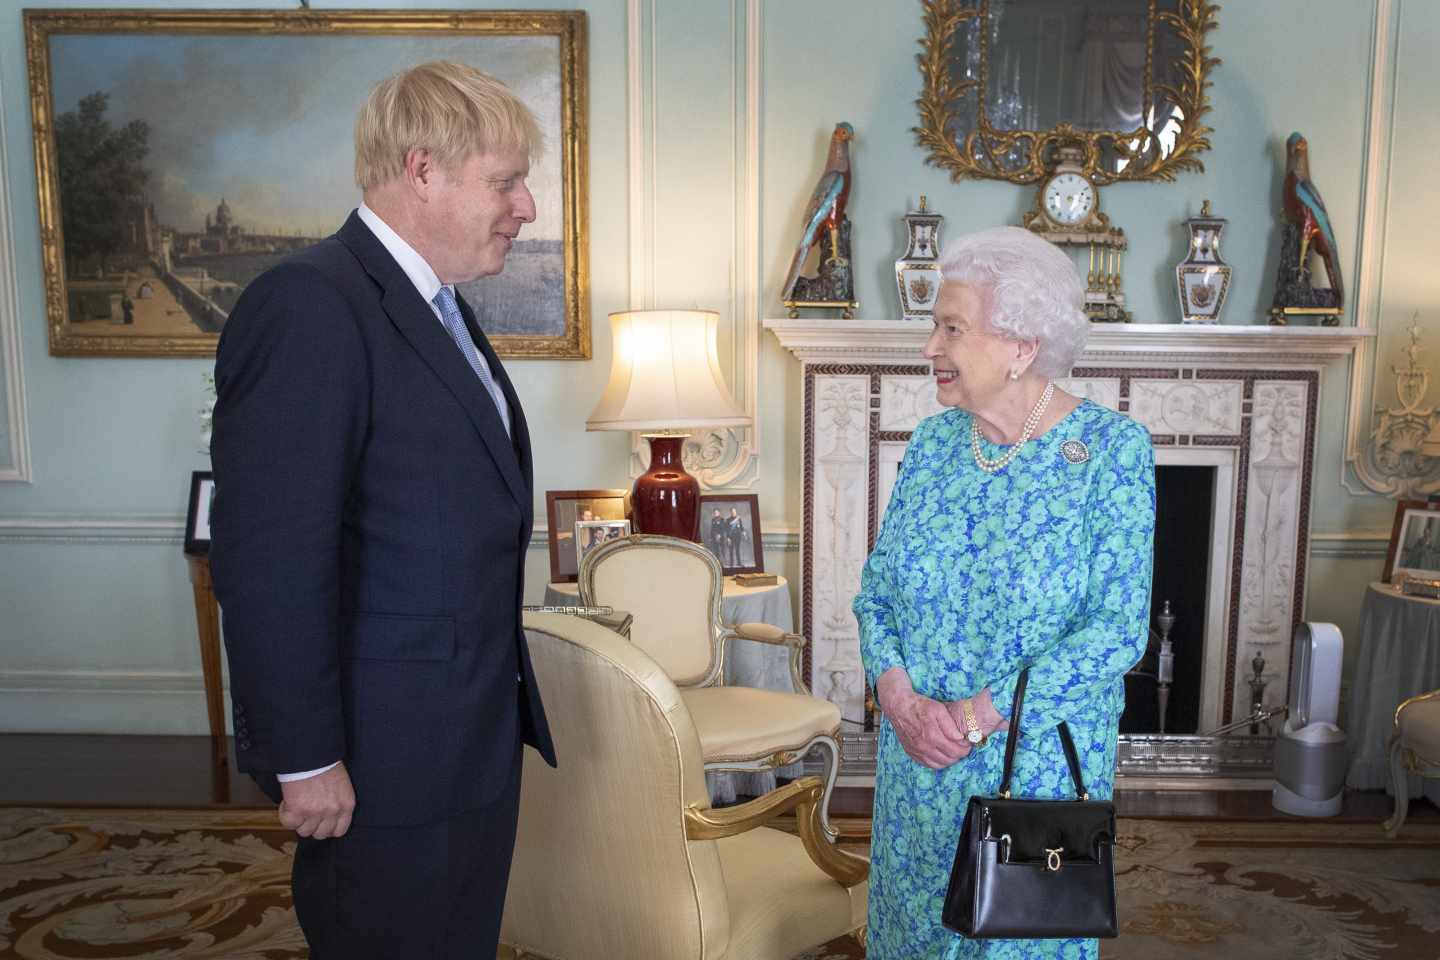 La Reina Isabel II recibe a Boris Johnson como primer ministro.